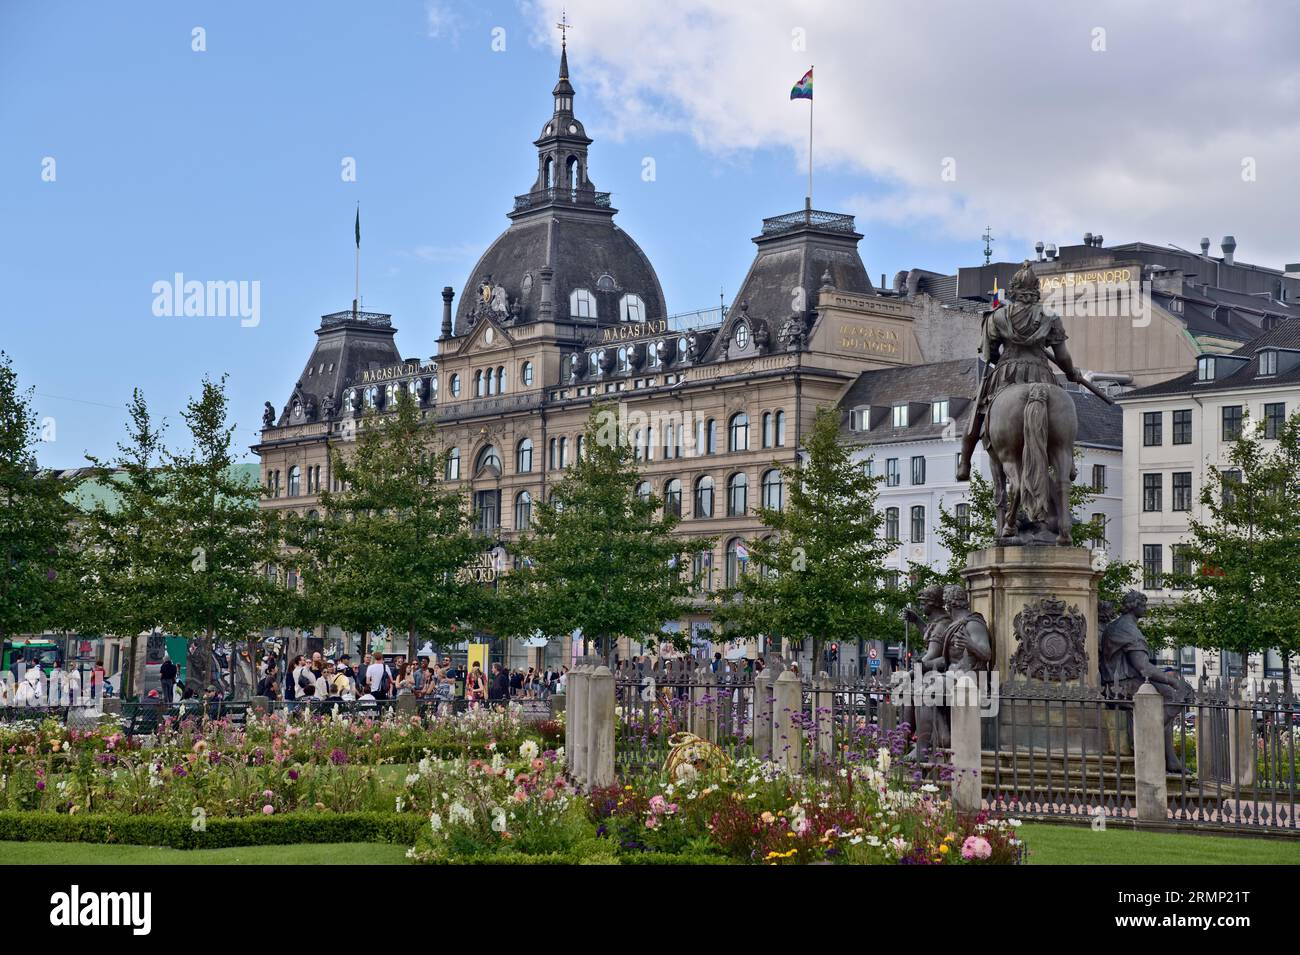 Blick vom Kings New Square auf die bronzene Reiterstatue von Christian V. und das Magasin du Nord Gebäude mit LGBTQ Flagge, Kopenhagen Dänemark Stockfoto